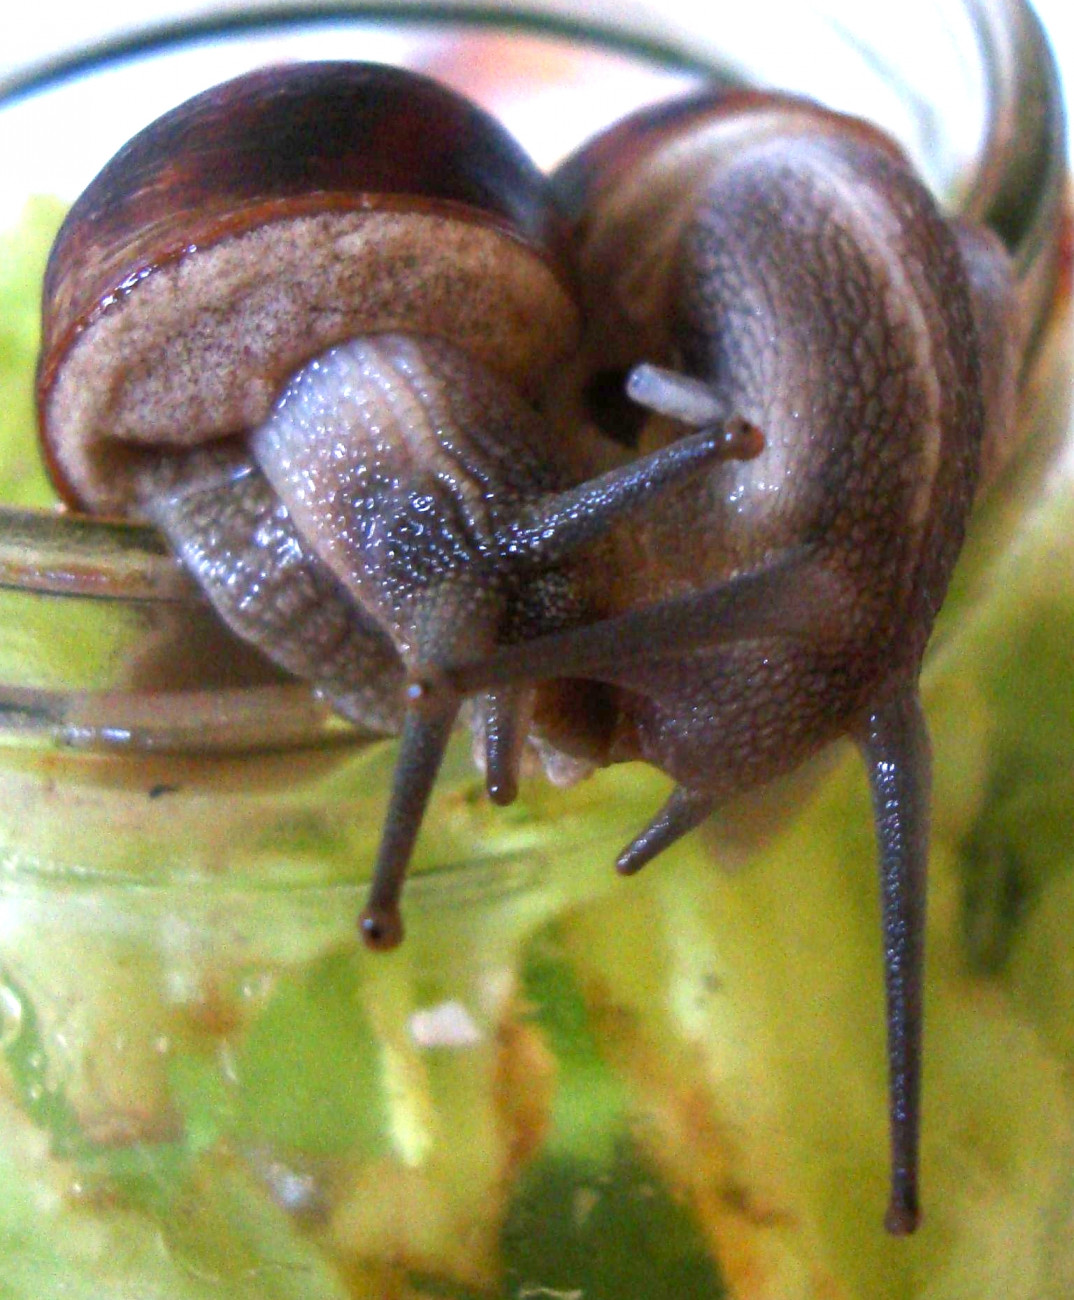 Photographie de deux escargots (Helix aspersa), avant l'accouplement. L'individu de droite a un dard d'amour planté dans son flanc droit.